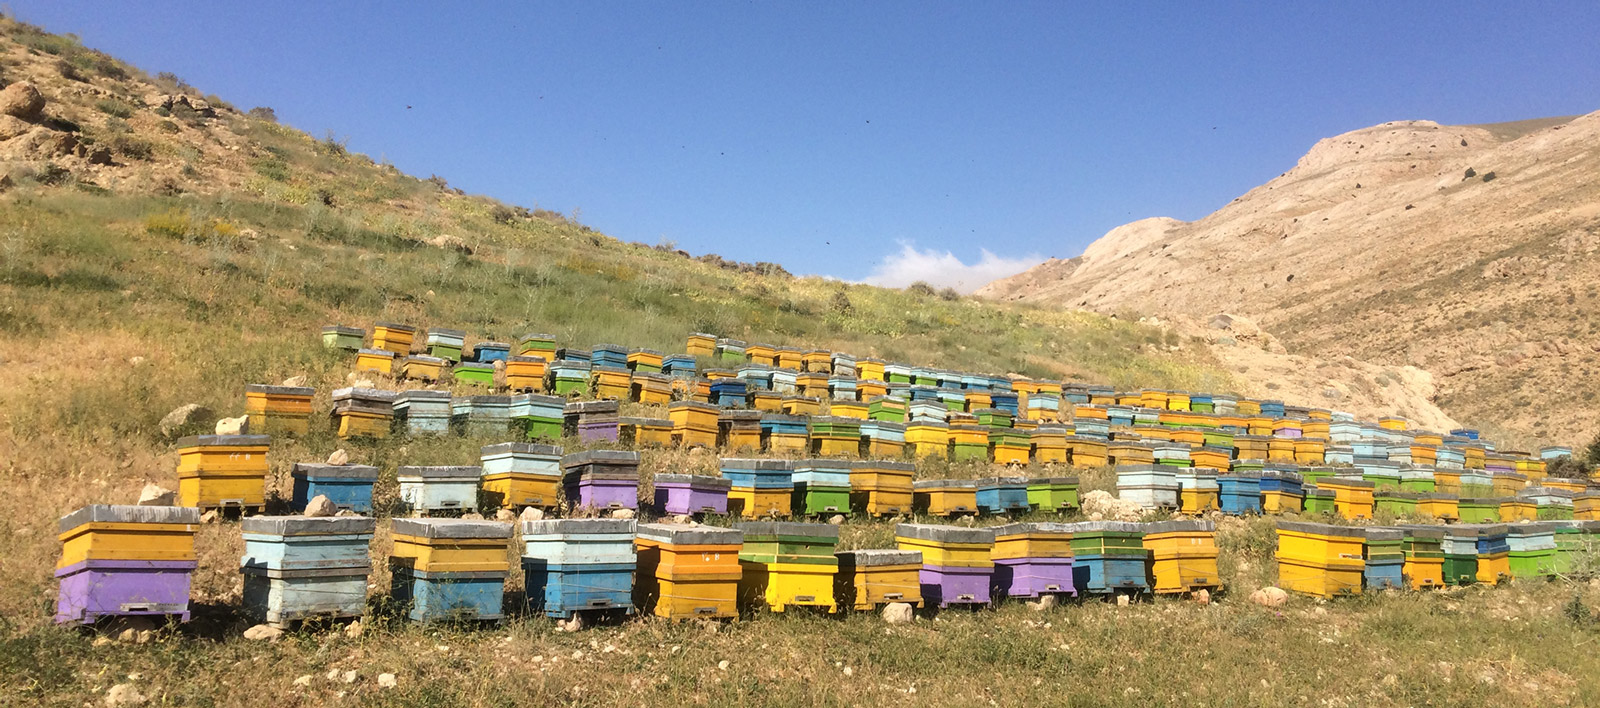 افزایش ۵۰ درصدی زنبورستان های فریدن